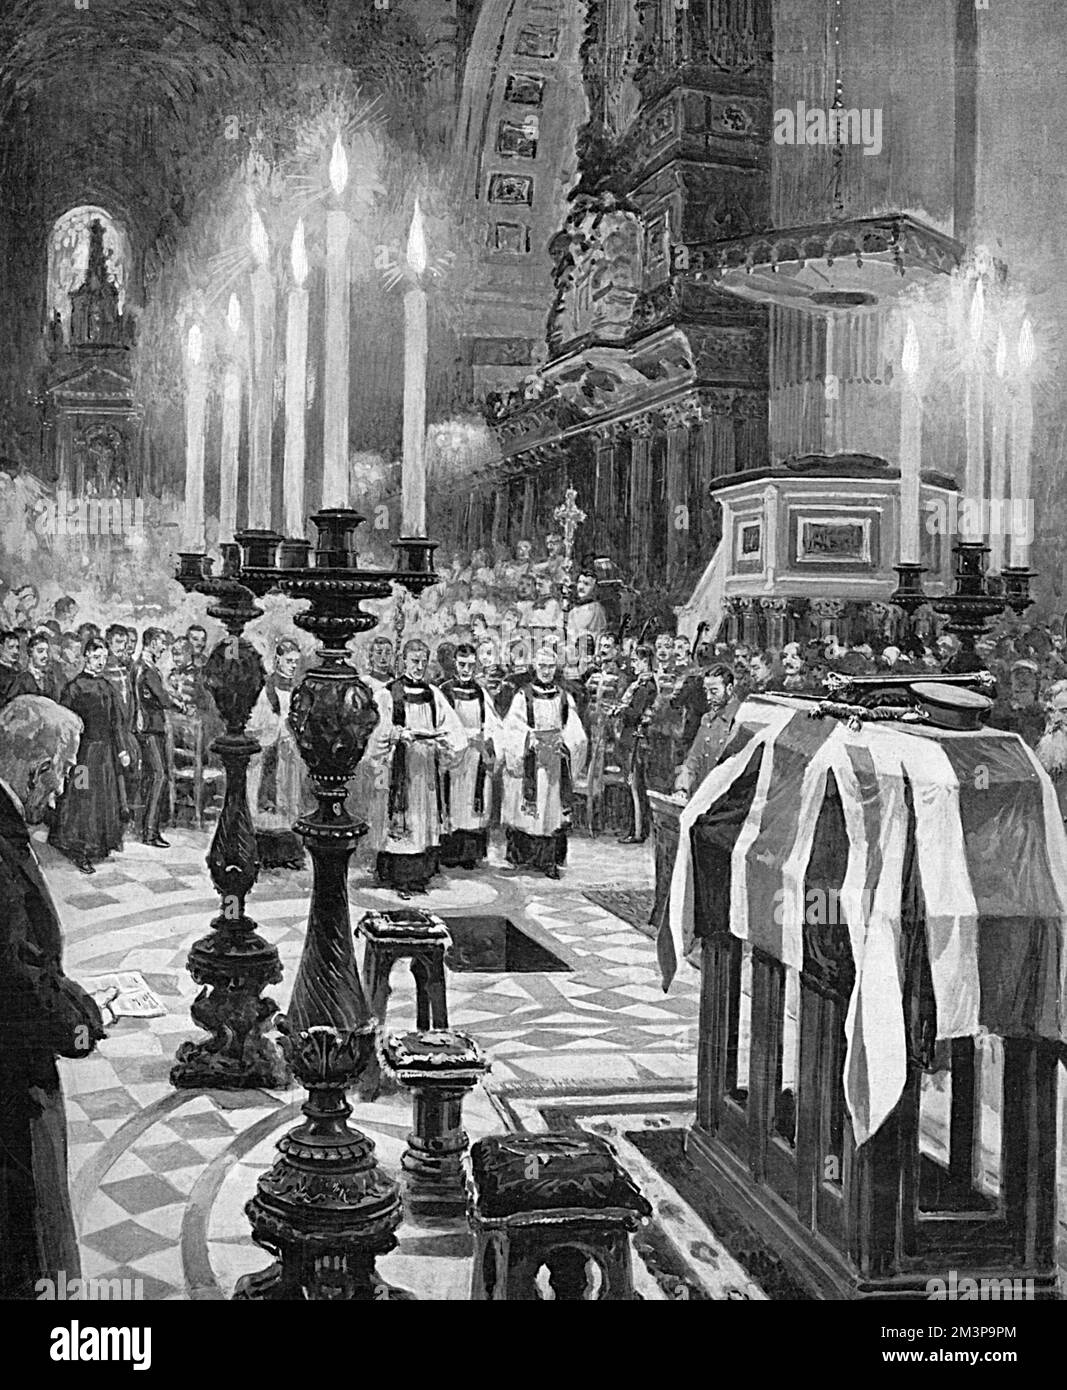 Les funérailles du maréchal Lord Roberts le 19th novembre 1914, scène à l'intérieur de la cathédrale Saint-Paul. Earl Roberts est mort de pnemonia en France alors qu'il visitait les troupes indiennes qui se battaient pendant la première Guerre mondiale. Date : 19th novembre 1914 Banque D'Images